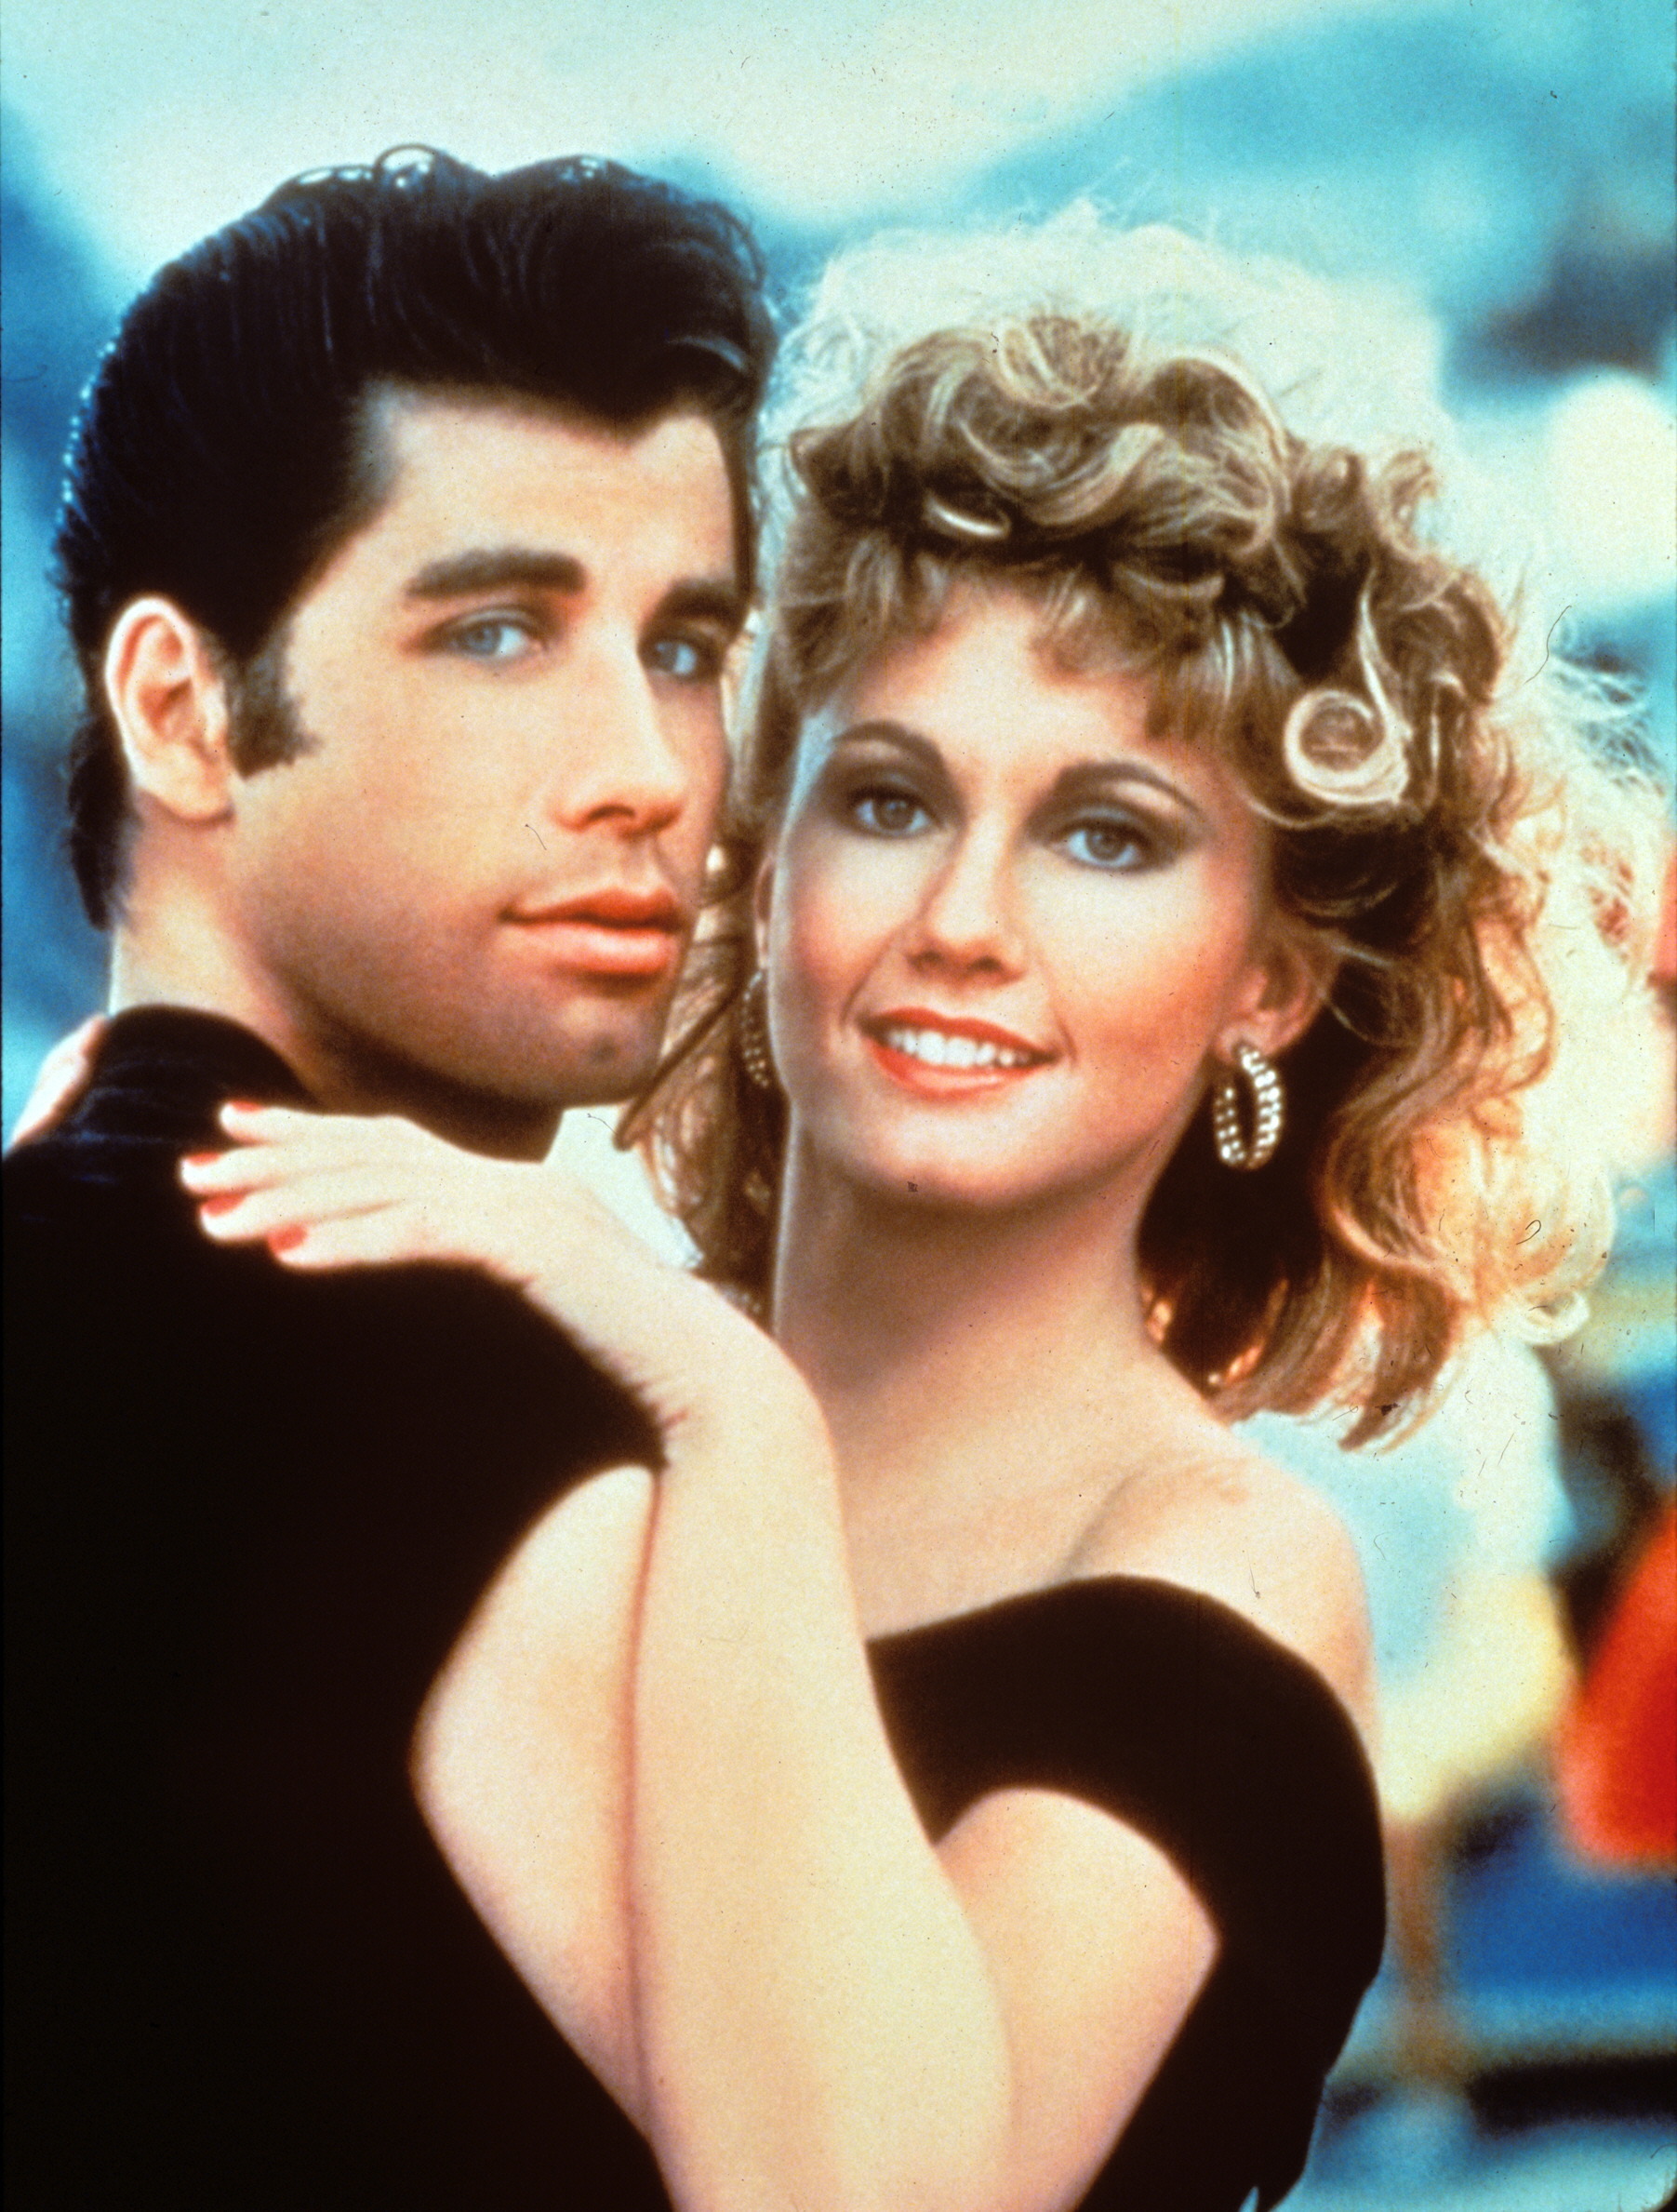 Imagen de archivo de John Travolta (i) y Olivia Newton John, durante el rodaje de la  producción cinematográfica 